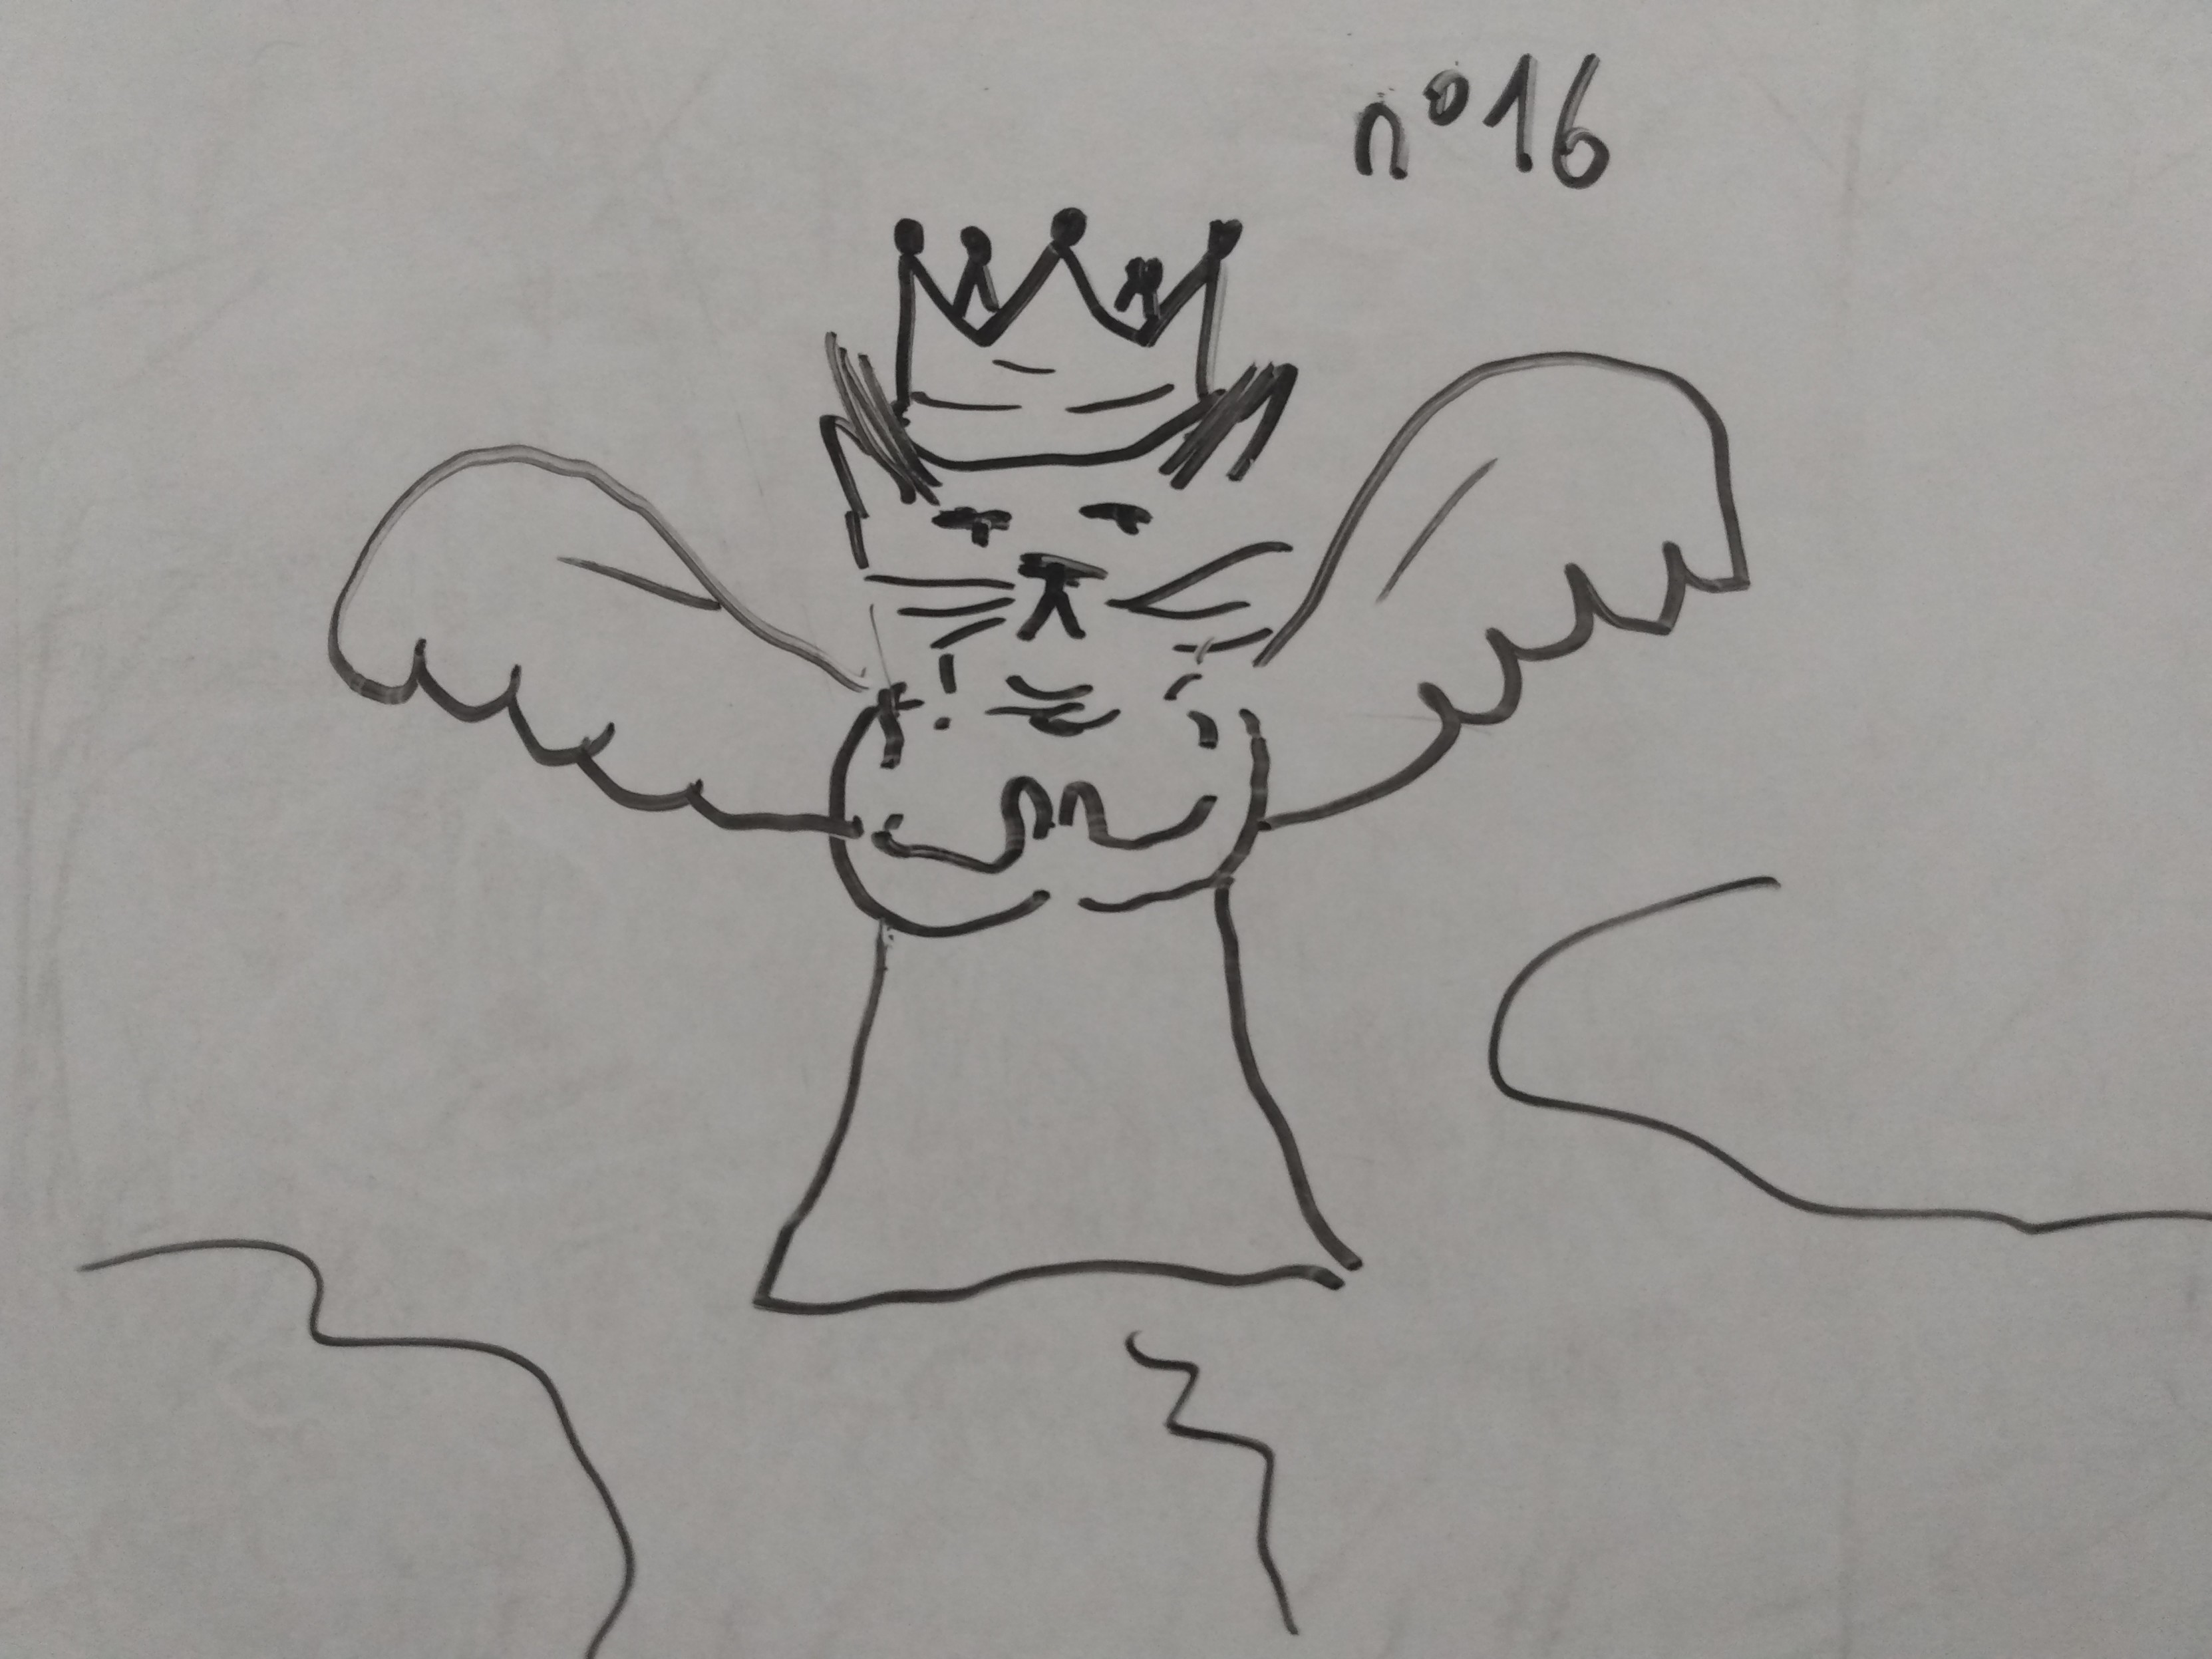 Le chat roi porte toujours sa couronne mais il est maintenant un ange dans le ciel ailé et enrobé